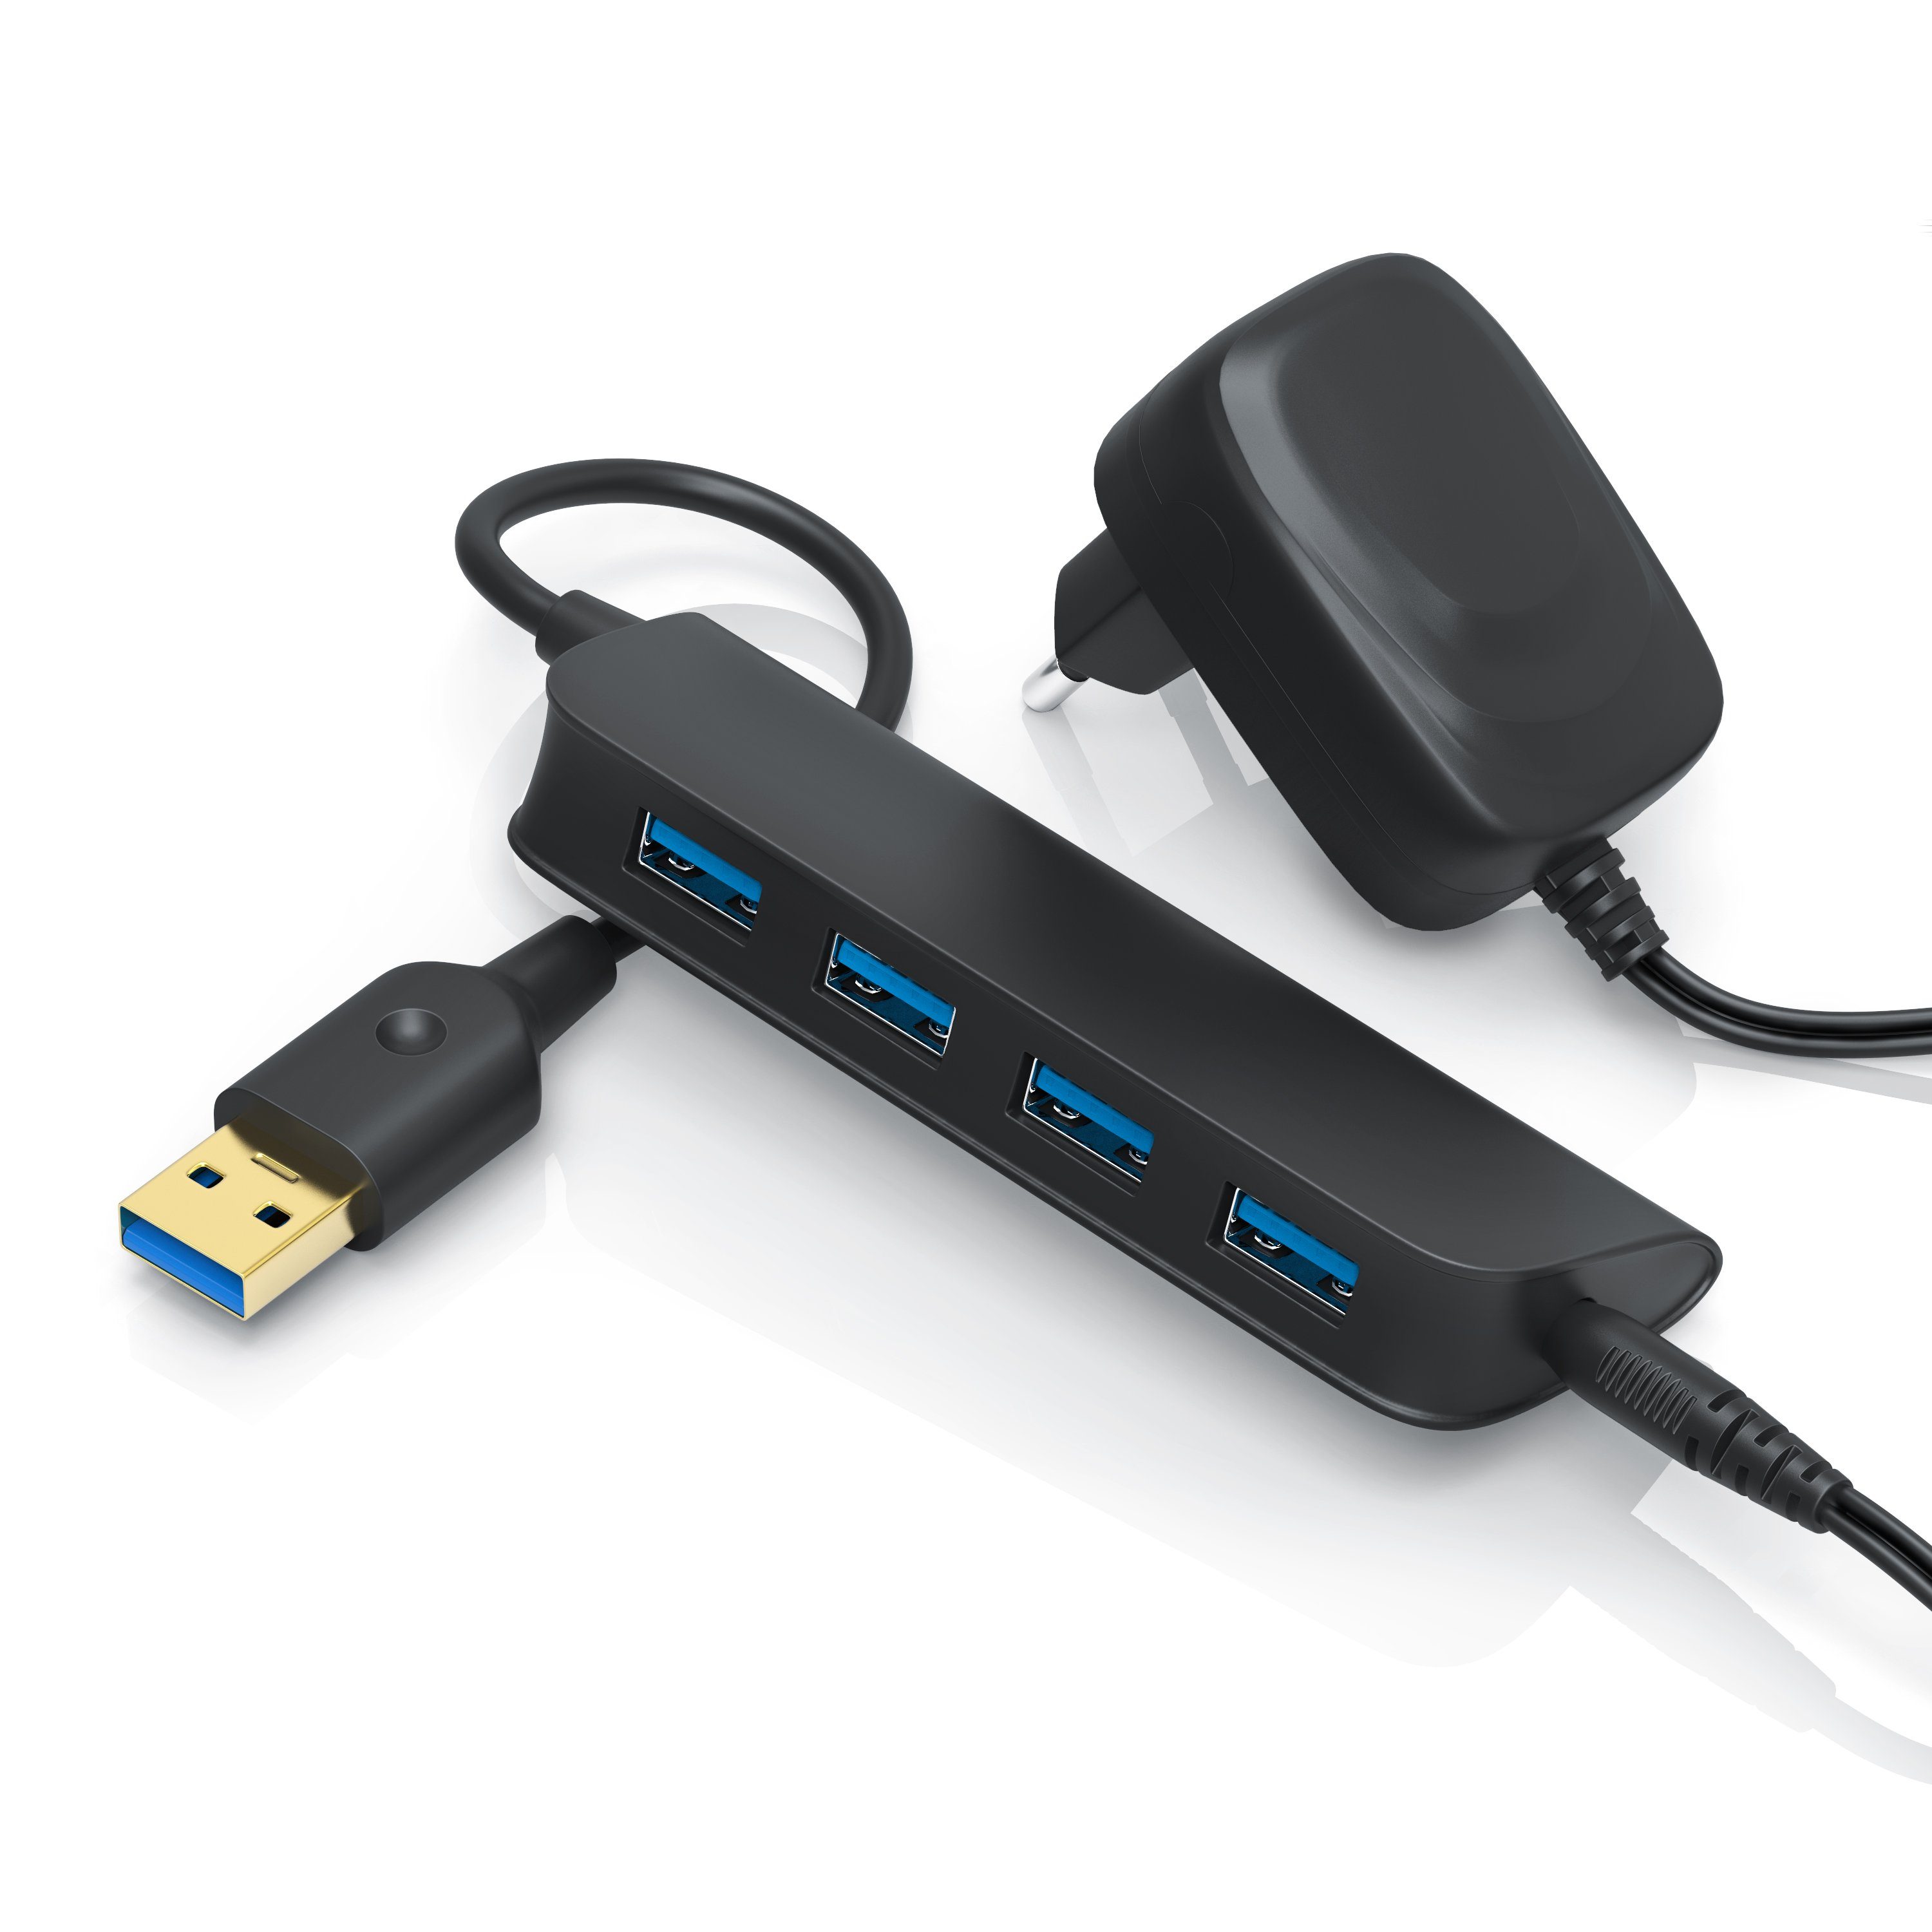 Primewire USB-Adapter, Slimline aktiver 4-Port USB 3.0 Hub mit Netzteil  sehr leicht / hohe Transportabilität